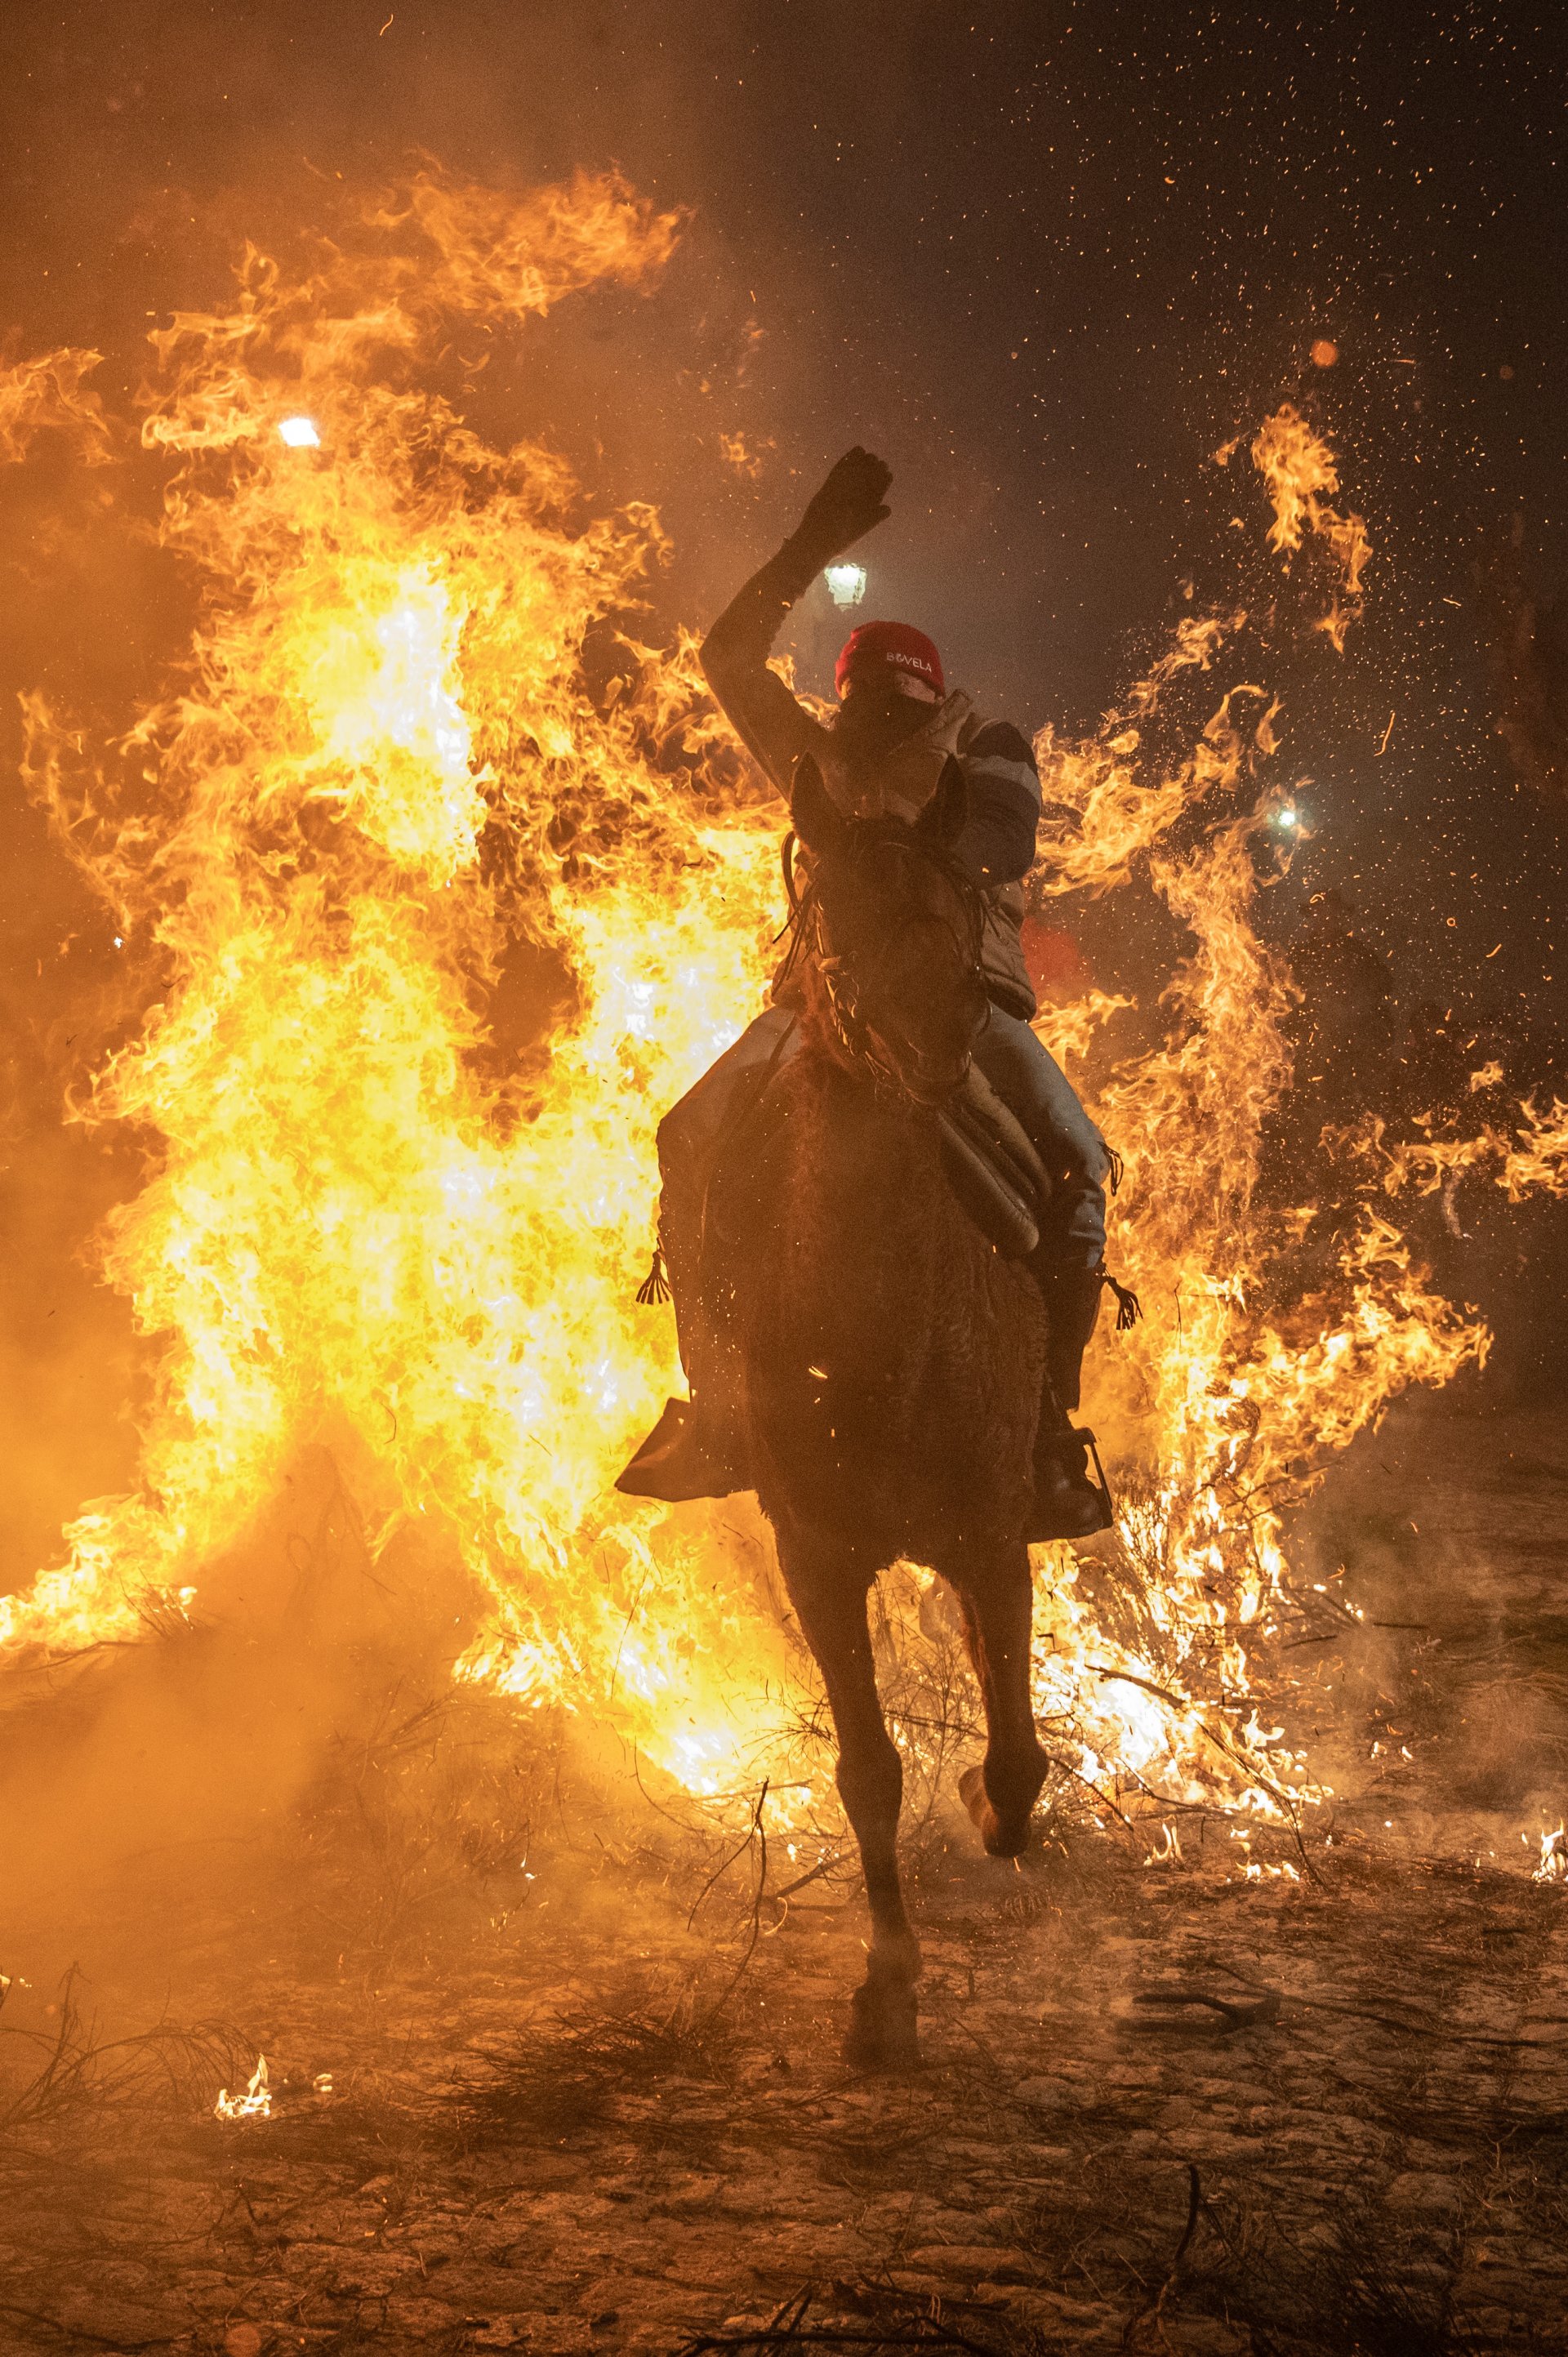 САН БАРТОЛОМЕ ДЕ ПИНАРЕС, ИСПАНИЯ – 16 ЯНУАРИ: Конен ездач прескача огън на 16 януари 2023 г. в Сан Бартоломе де Пинарес, Испания. Конни ездачи прескачат огньове по време на традиционния ритуал в чест на Сан Антонио Абад (Свети Антоний Абат), покровител на домашните животни, известен като Las Luminarias, който има за цел да пречисти животните с дима на огньовете и да ги защити за идната година. (Снимка от Маркос дел Мазо/Гети изображения)